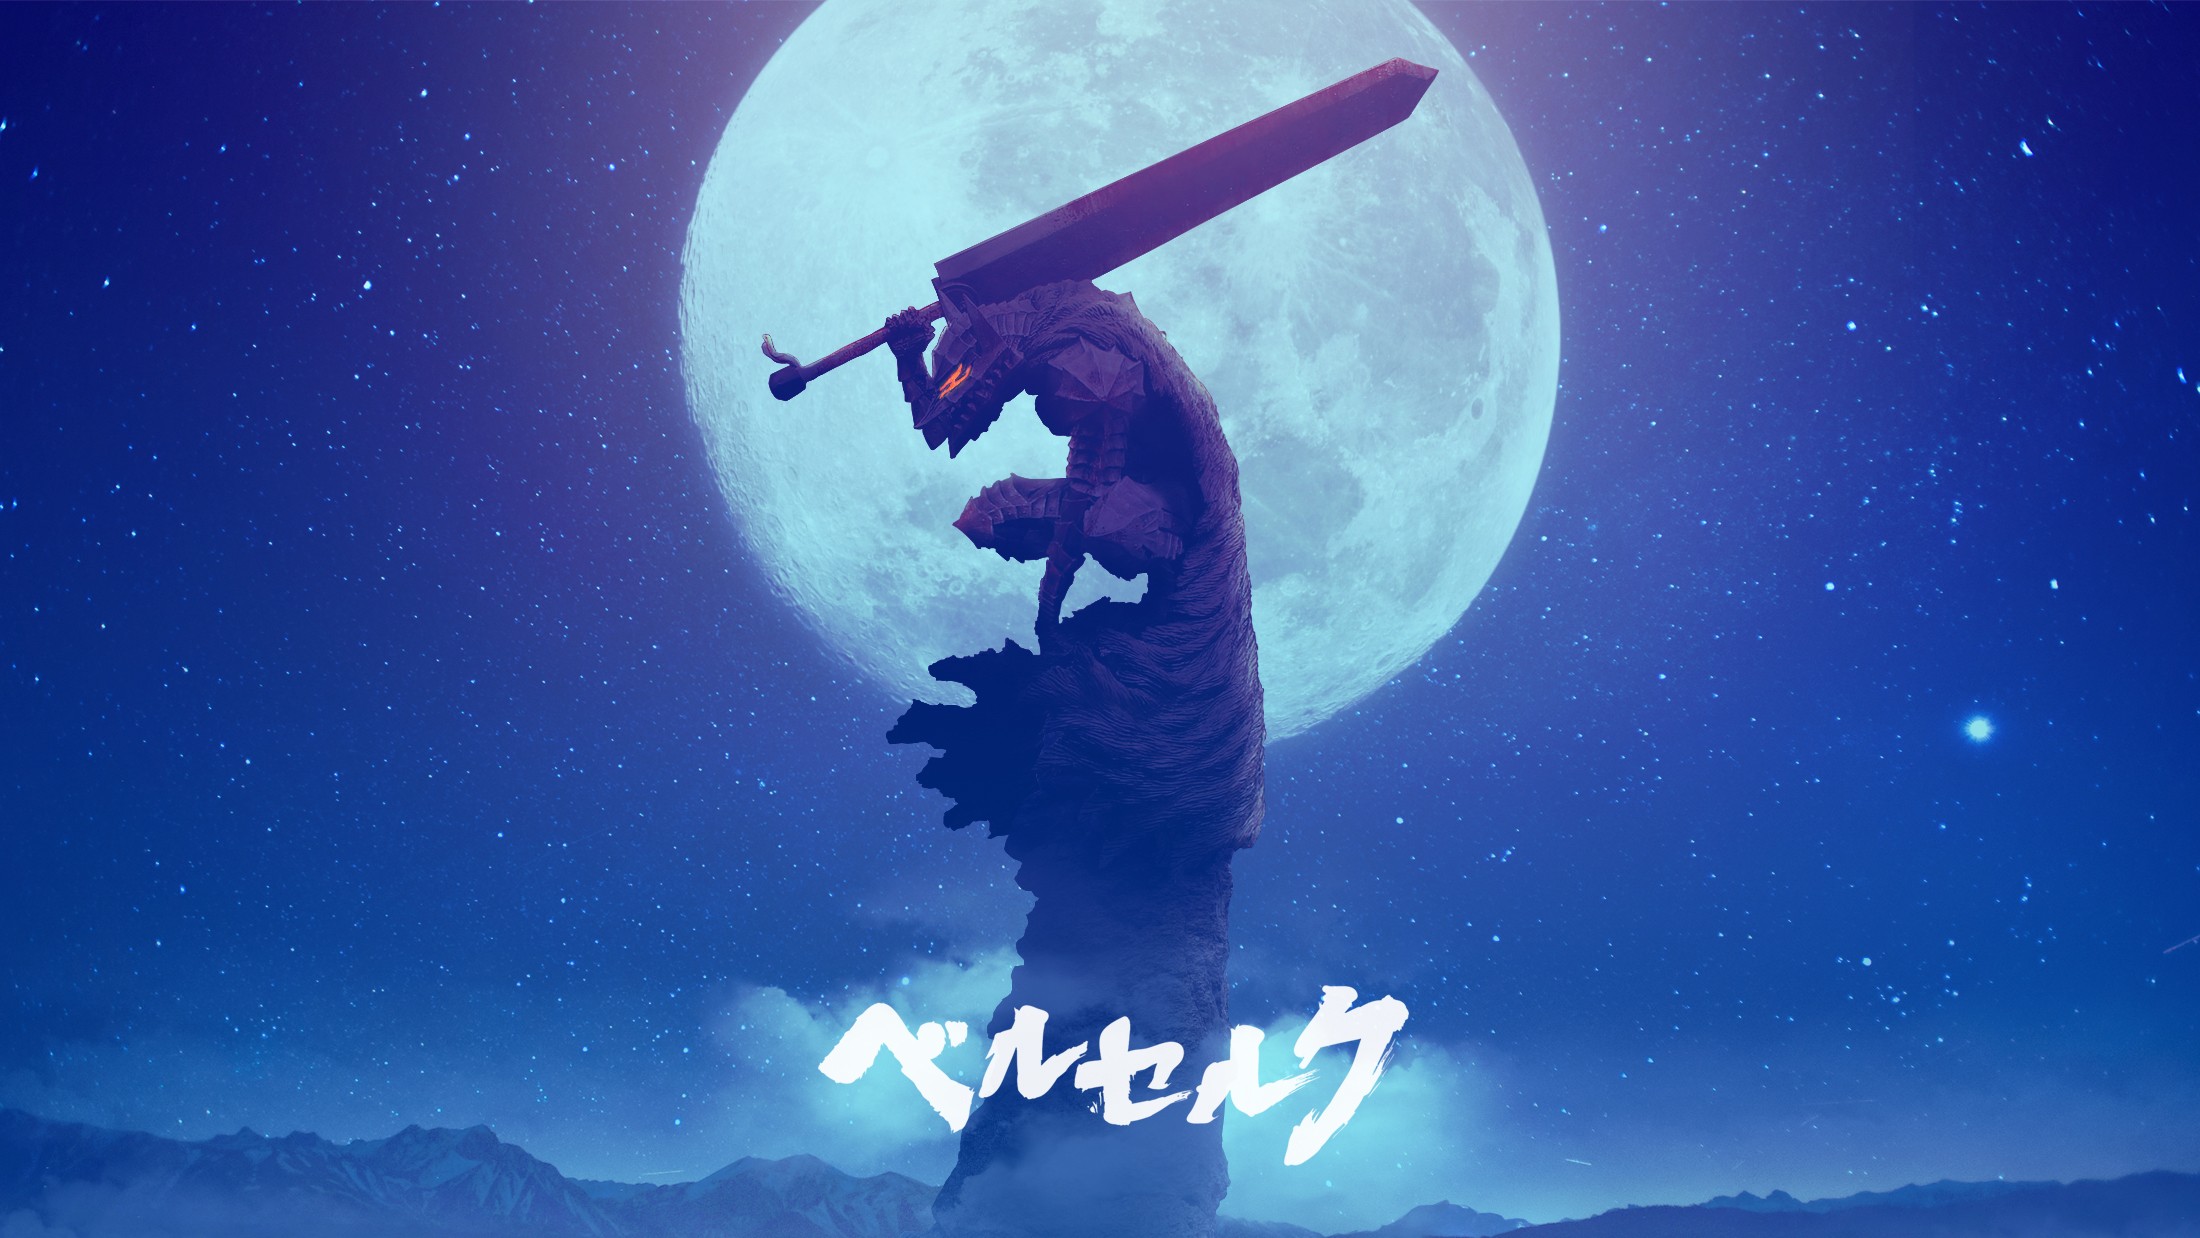 Berserk Sword Kentaro Miura Guts Anime Boys Moonlight Fantasy Armor Red Eyes 2D Fan Art Black Swords 2200x1238